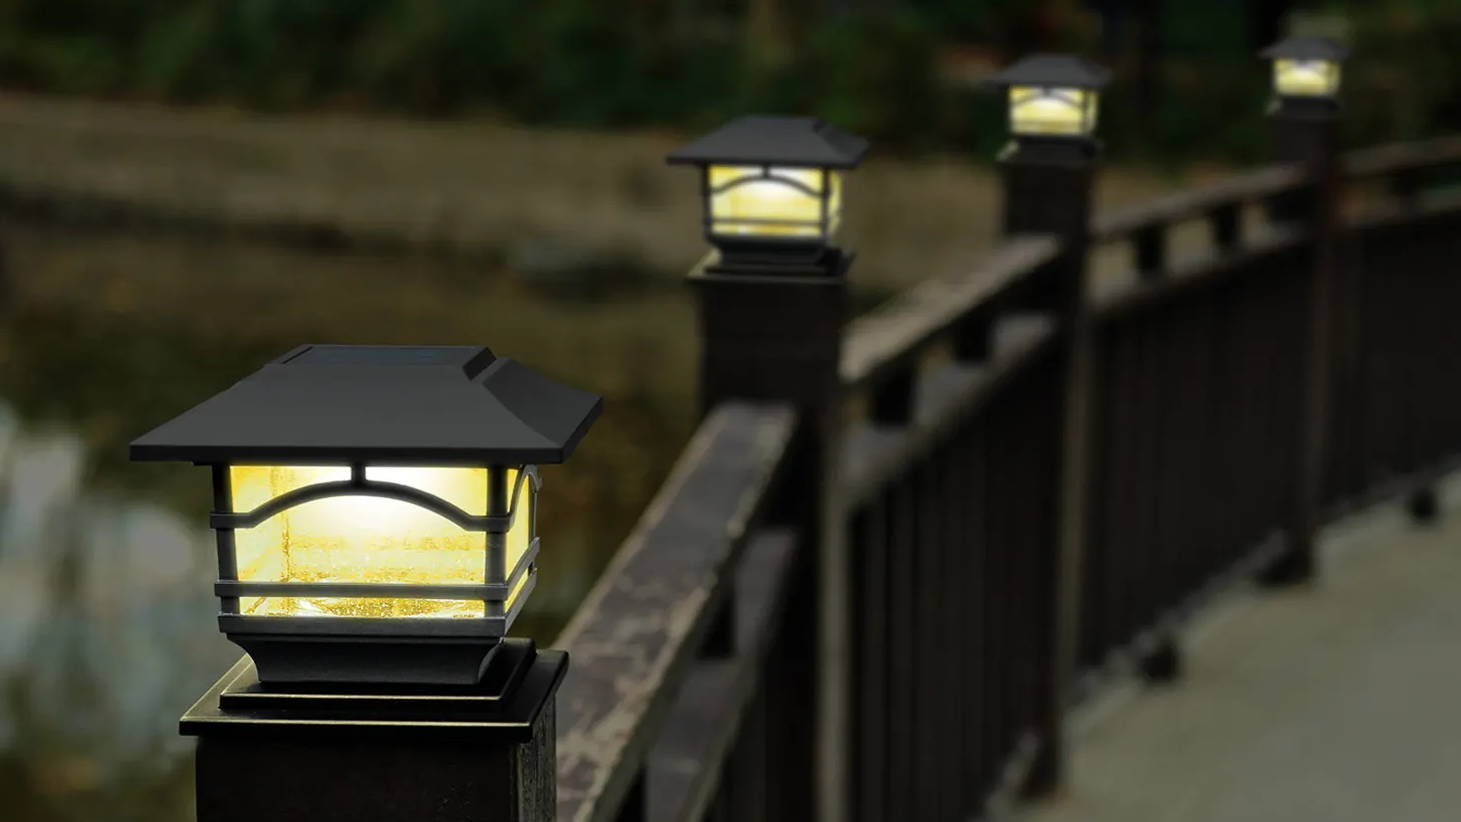 Davinci Solar Outdoor Lights Lighting for Deck Post Fence Steps or Dock B... 